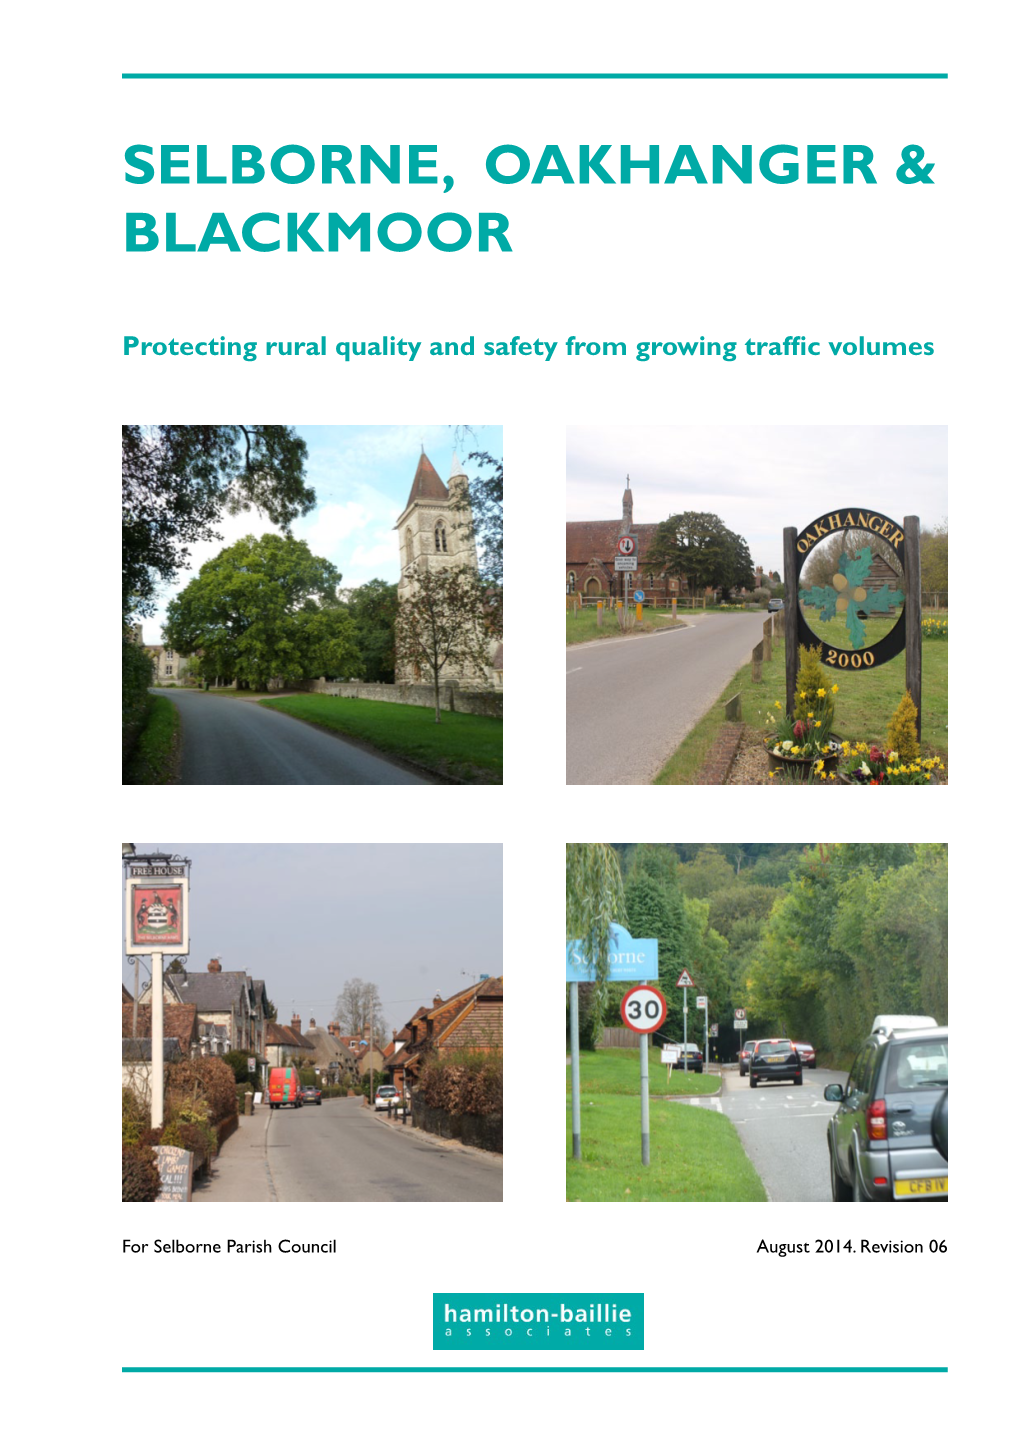 Selborne, Oakhanger & Blackmoor